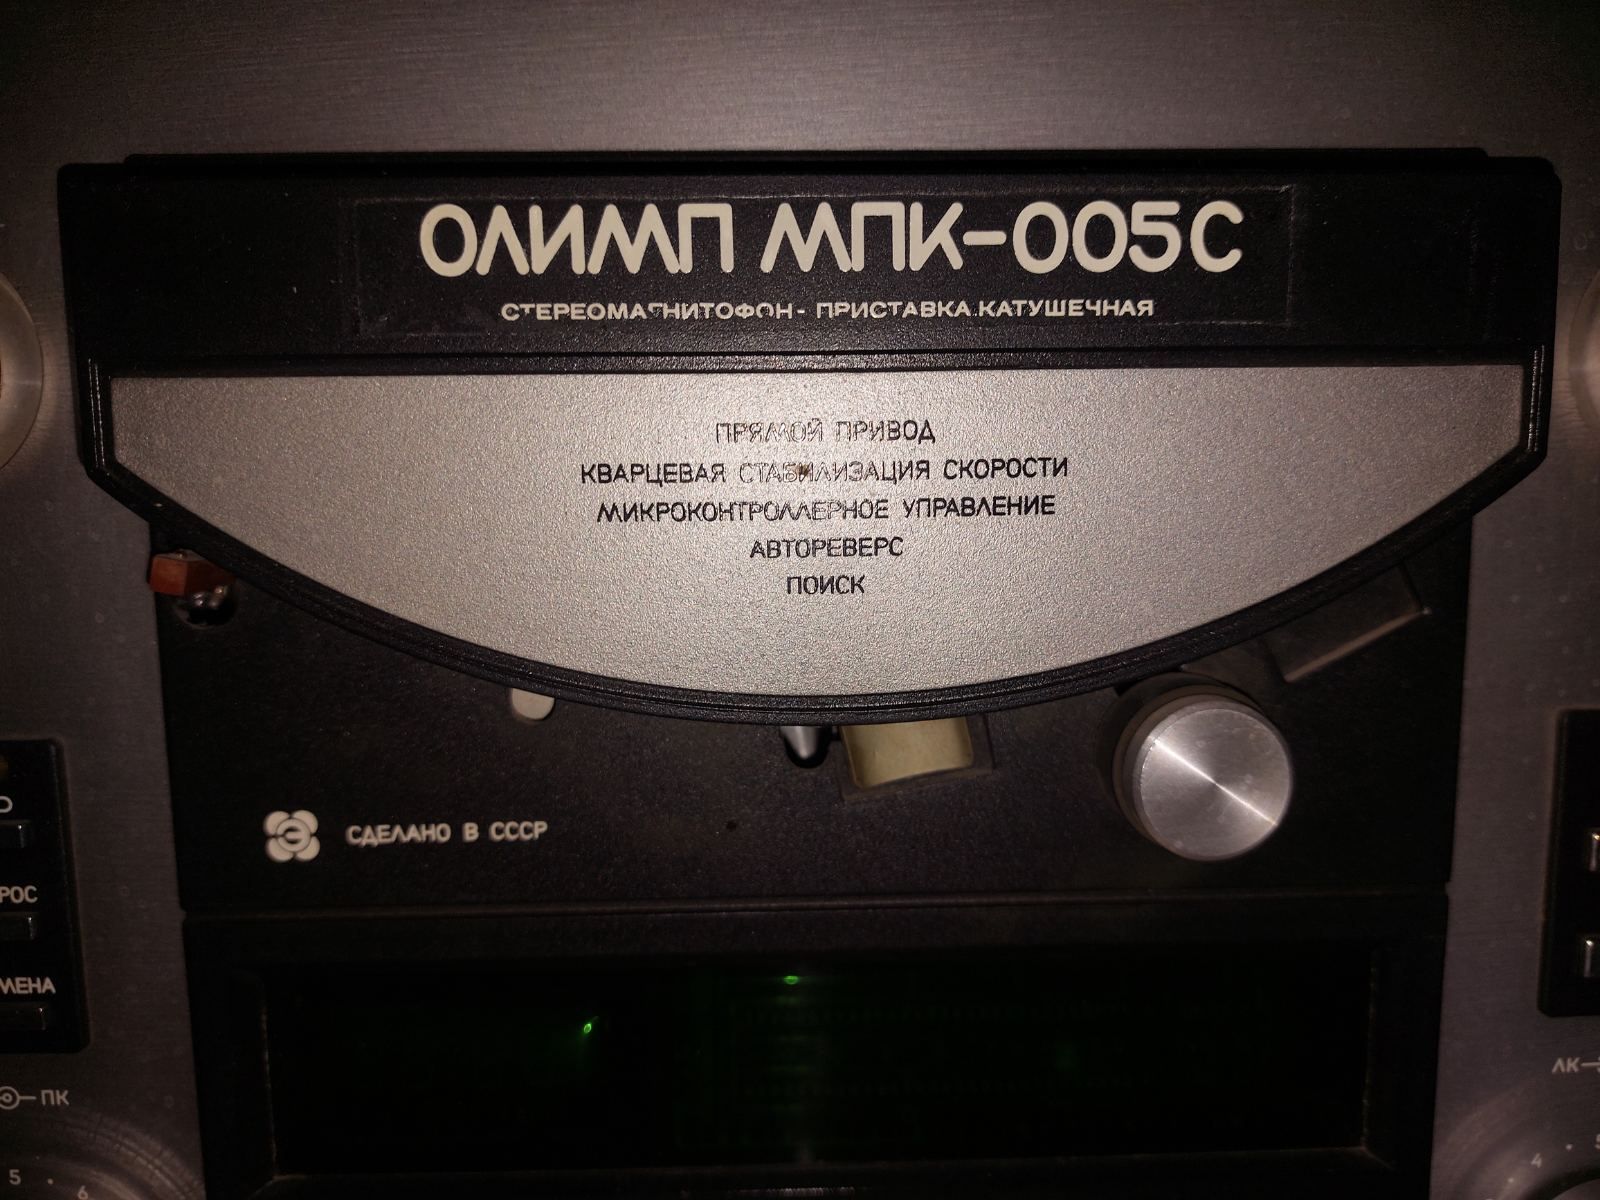 Катушечный магнитофон Олимп МПК-005С.